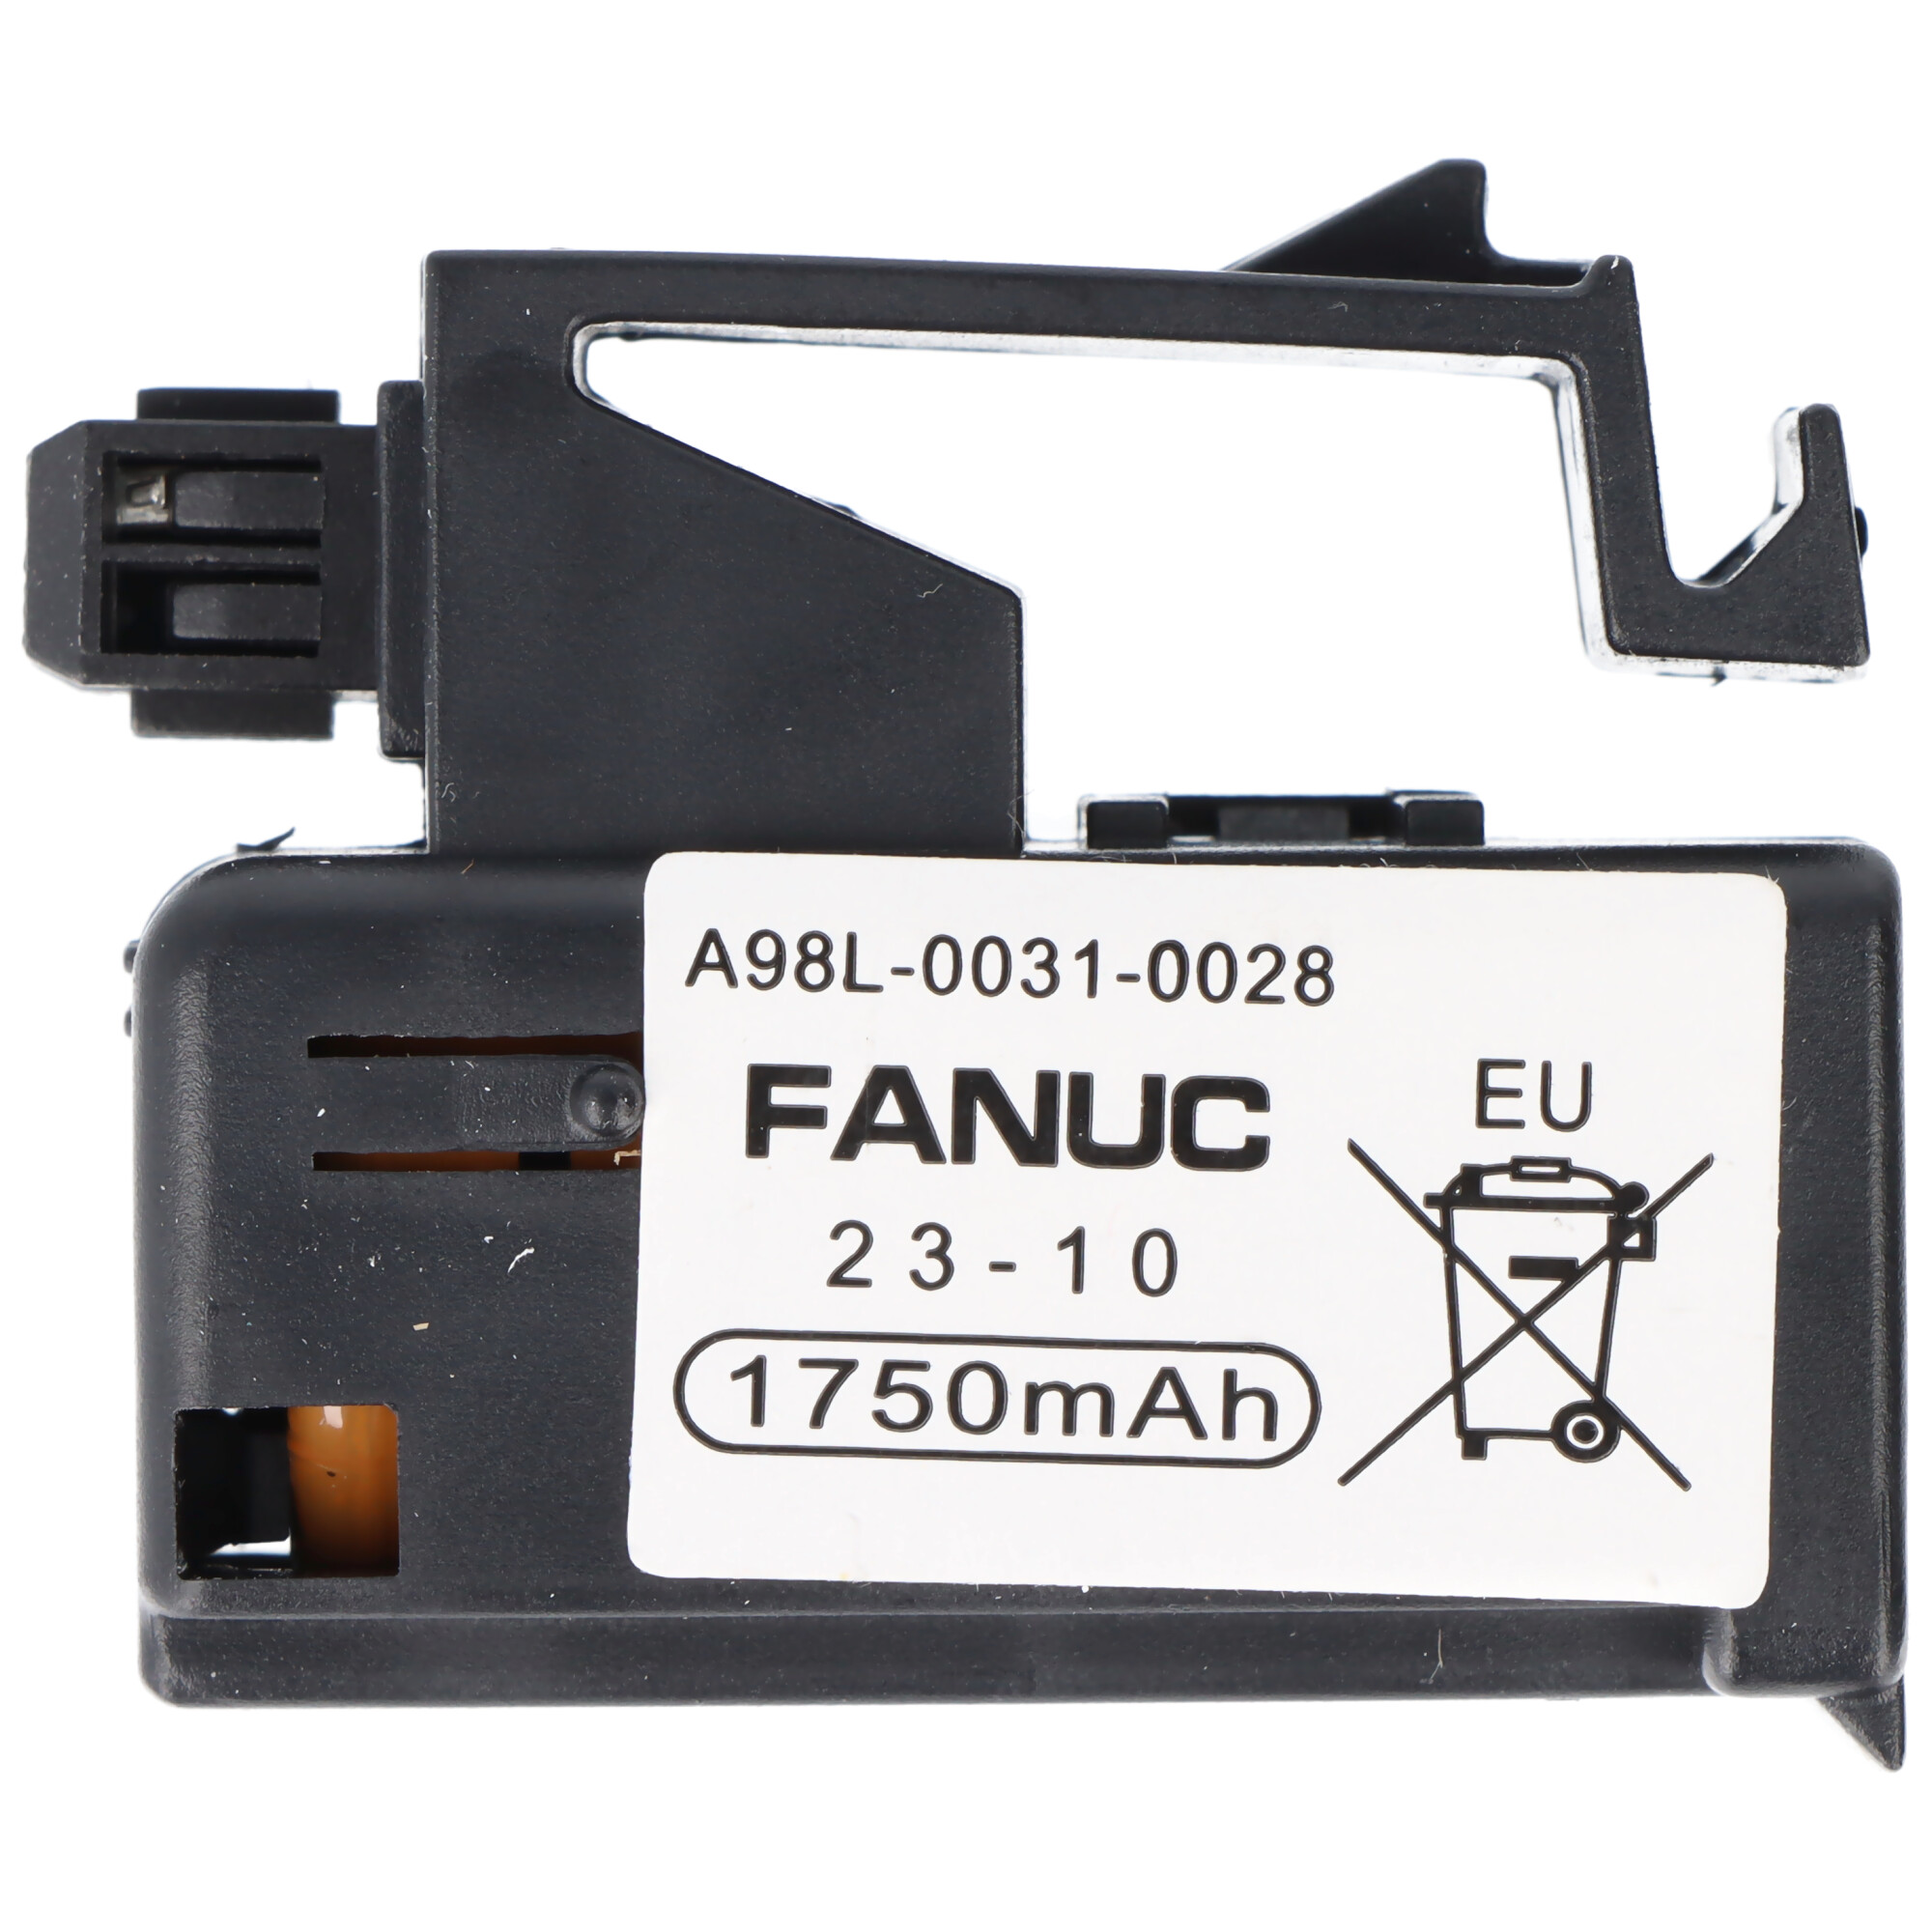 Original Fanuc Speicherbatterie 3V passend für A98L-0031-0028, alte Version, bitte unbedingt Anschluss beachten